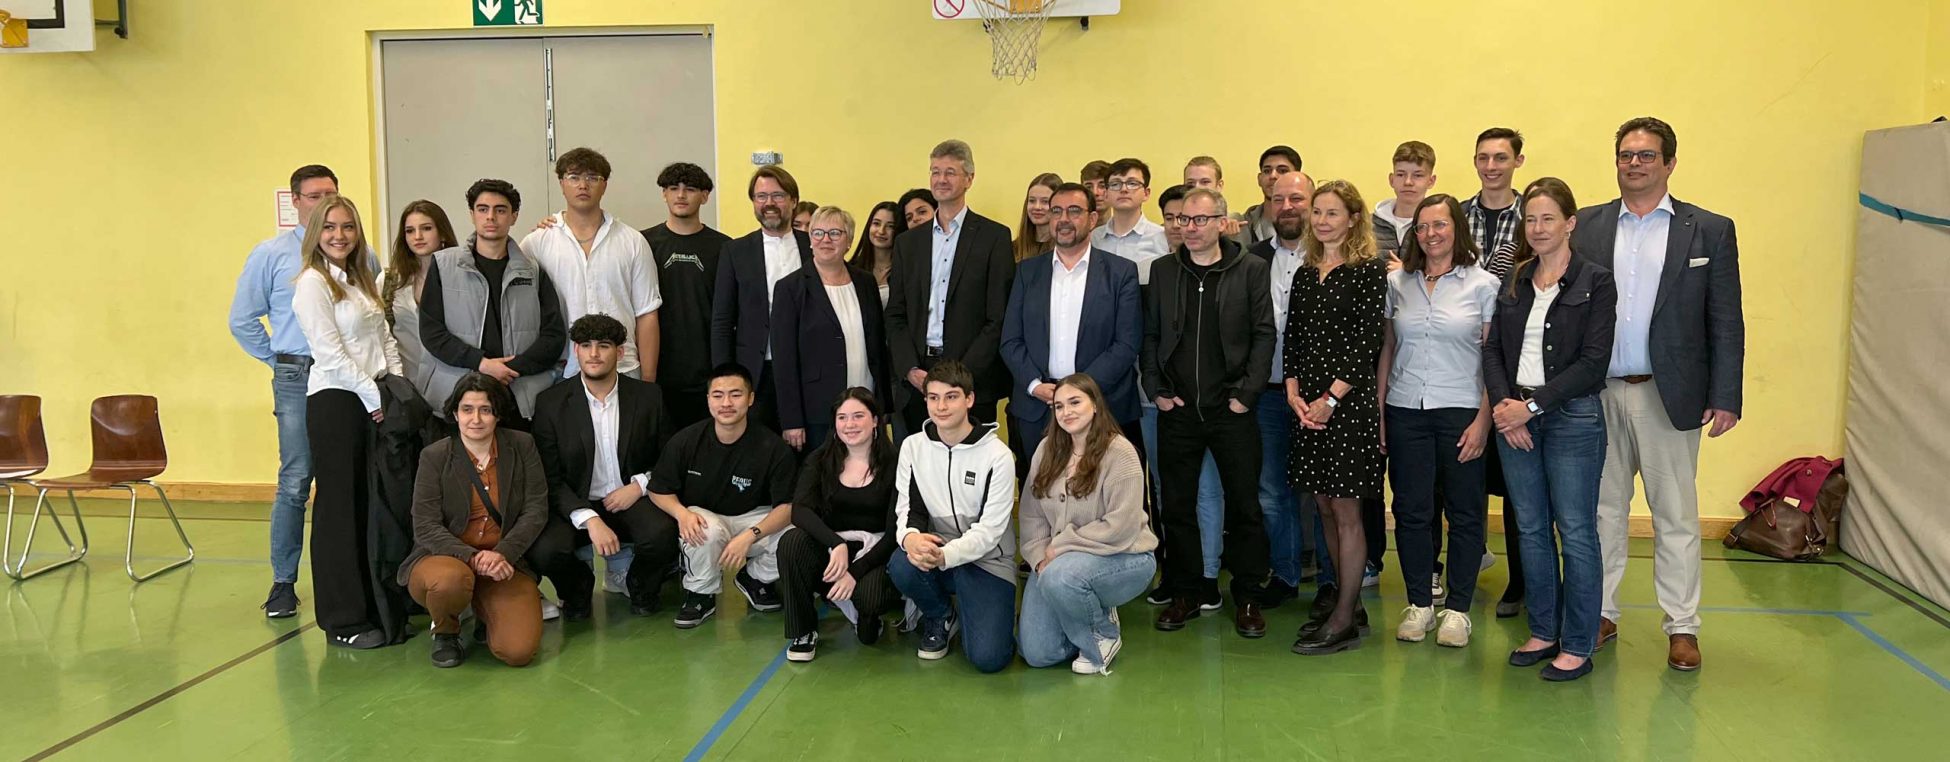 Schüler der Rudolf-Diesel-Realschule München mit Holetschek und Piazolo